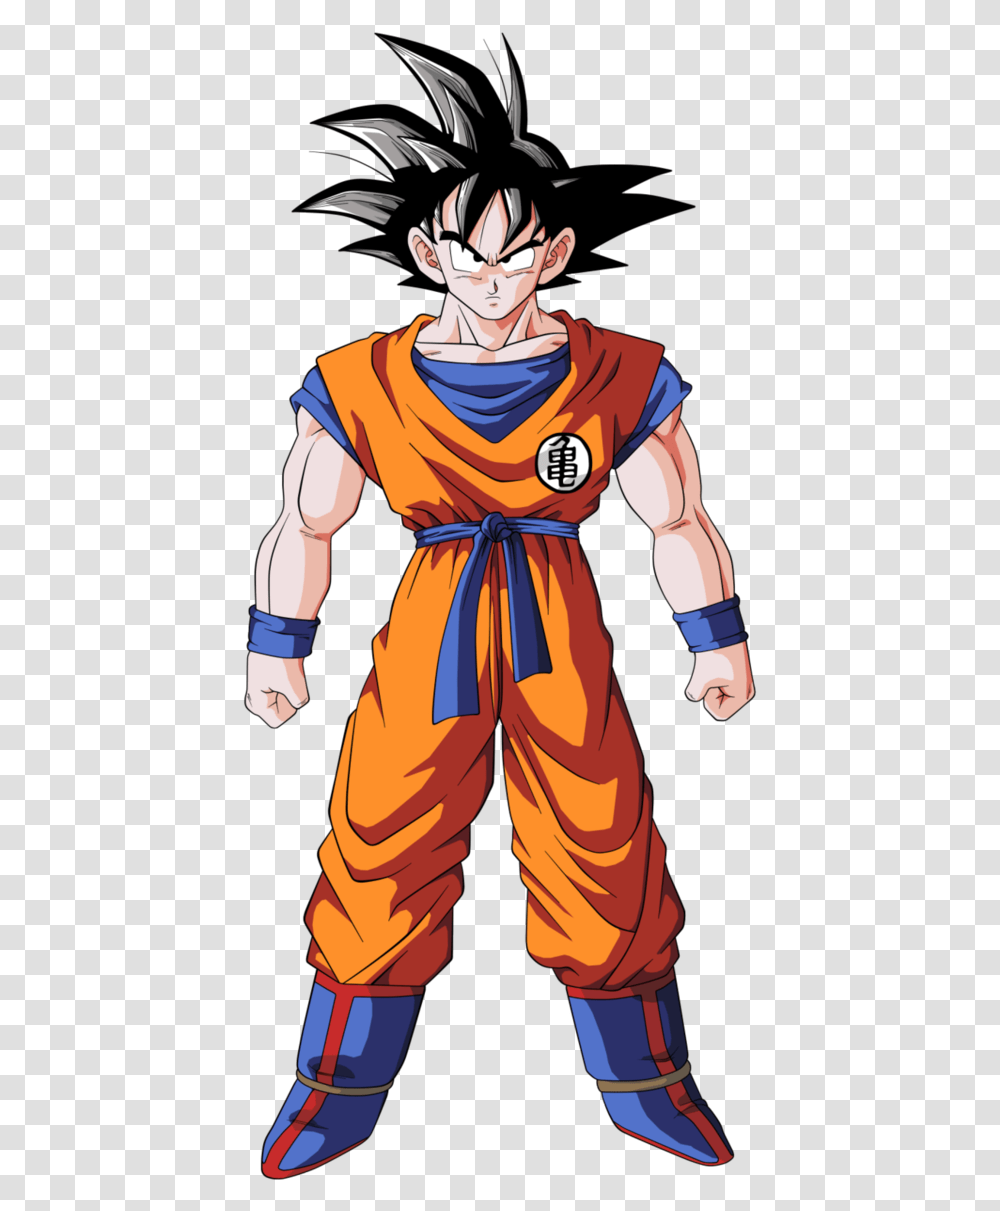 Goku Dragon Ball Z Goku, Person, Costume, Ninja Transparent Png